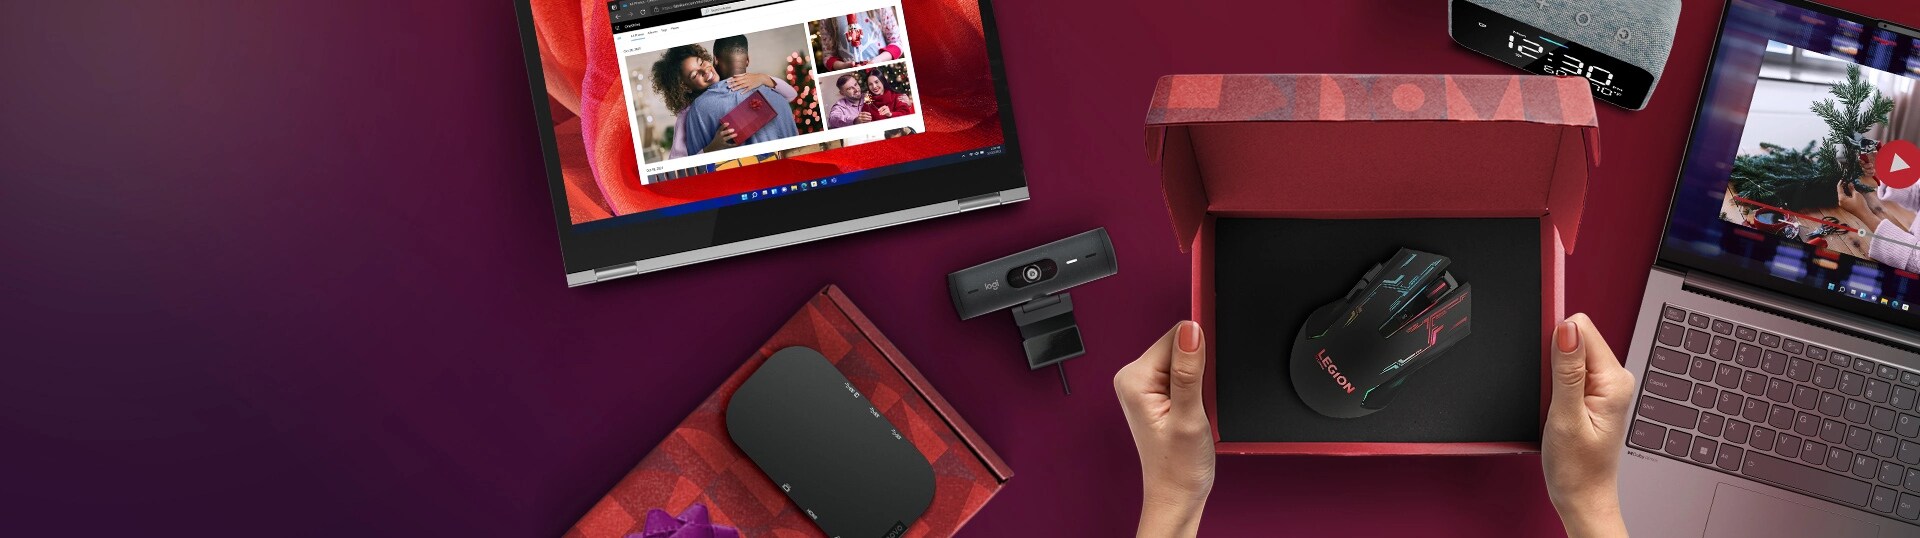 Laptop, speaker in gift box, tablet, gift